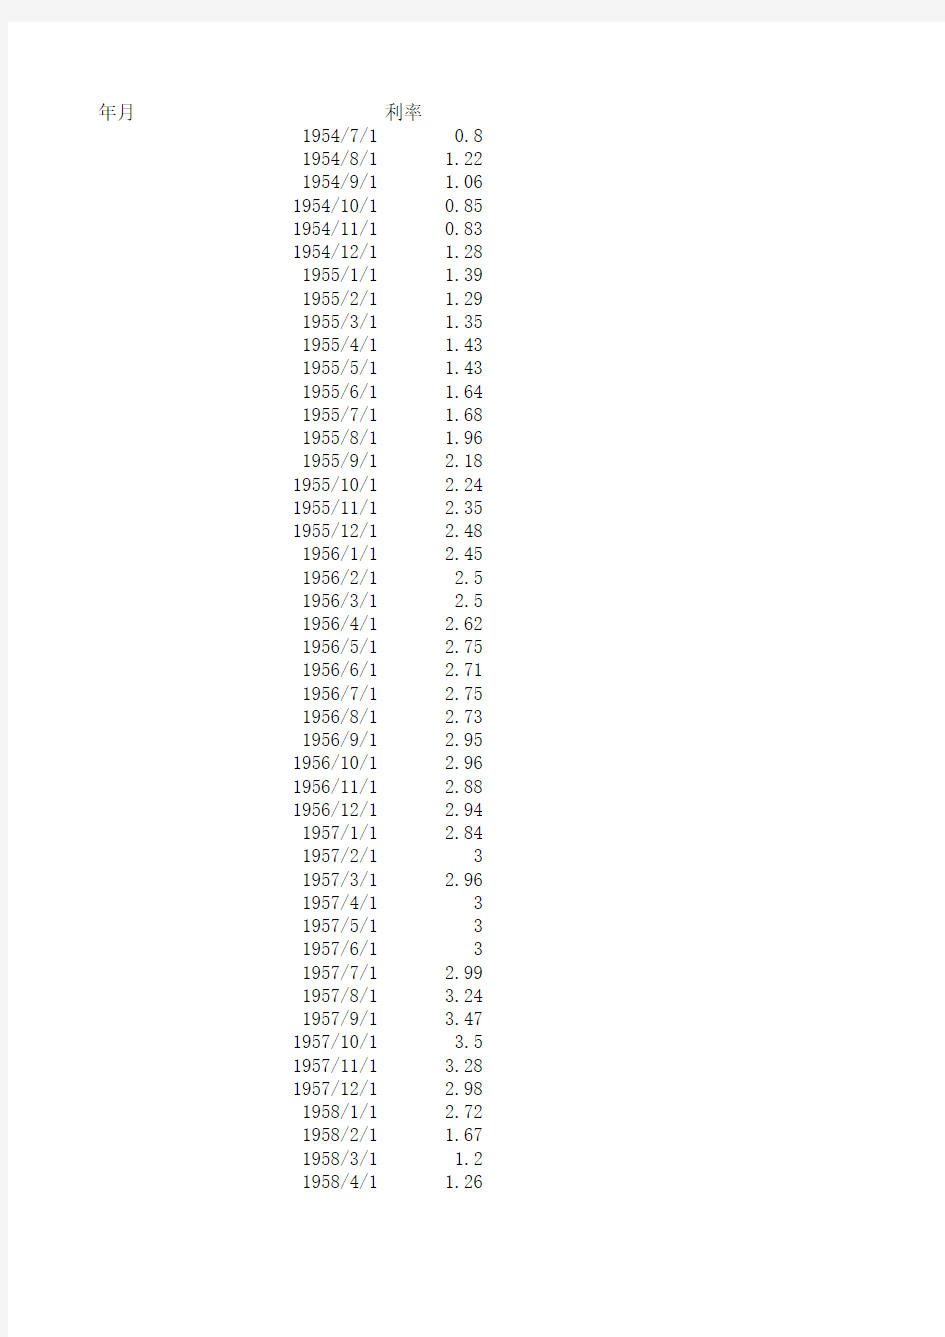 历年美联储利率数据